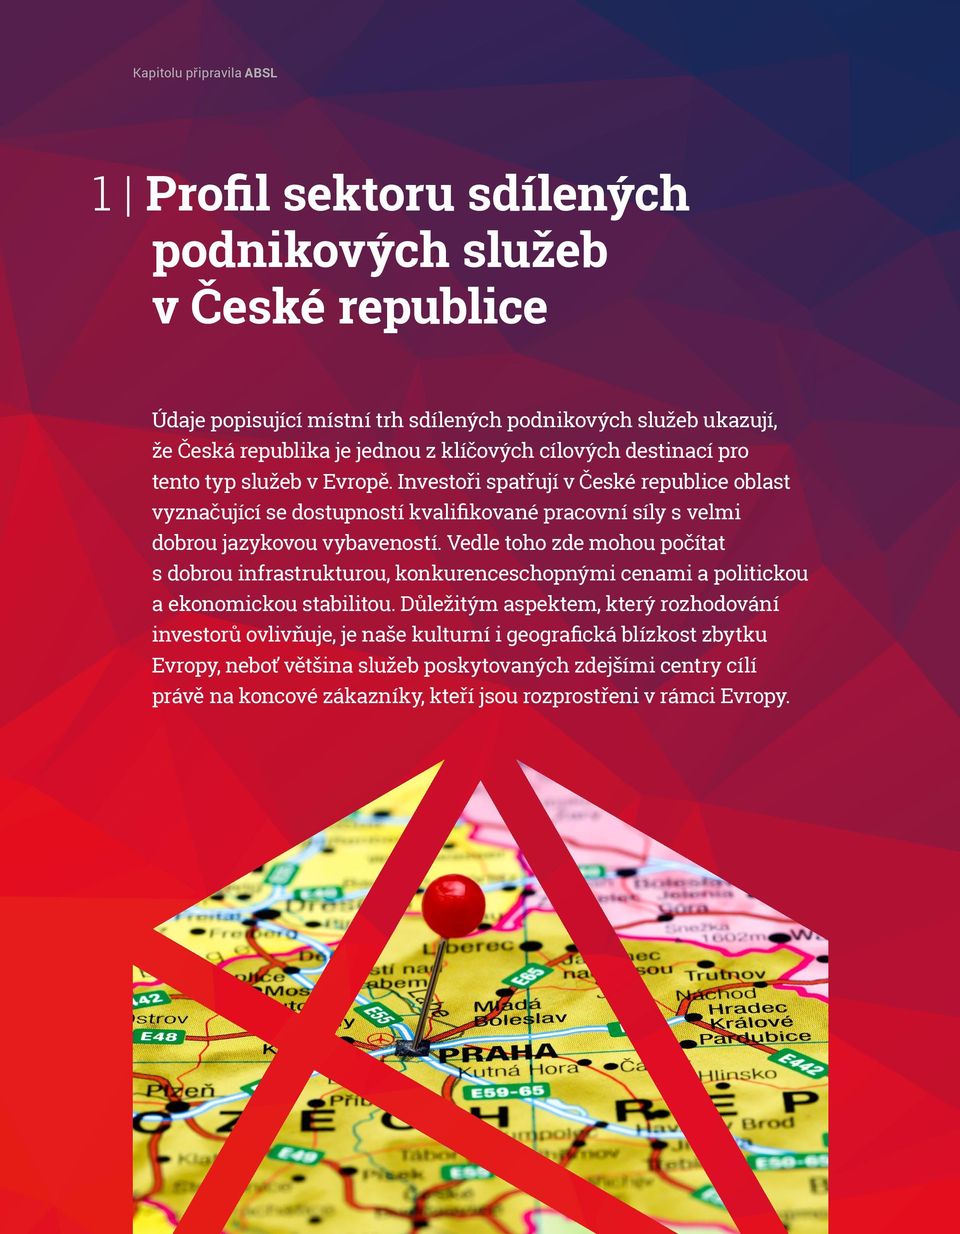 Investoři spatřují v České republice oblast vyznačující se dostupností kvalifikované pracovní síly s velmi dobrou jazykovou vybaveností.